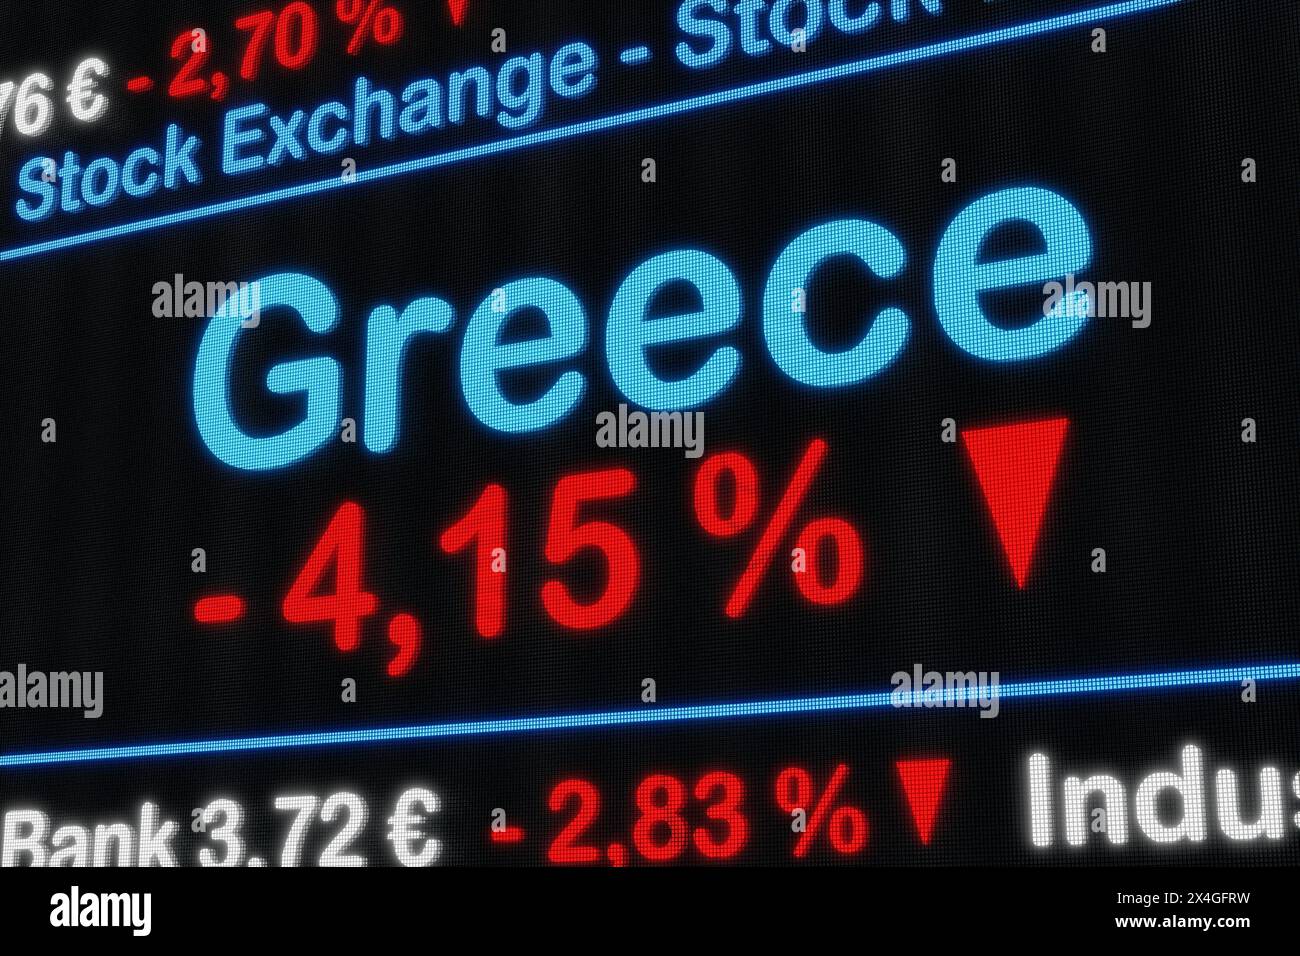 La borsa della Grecia si sta abbassando. La borsa della Grecia si sta abbassando. Segno percentuale rosso, diminuzione, riduzione, ticker del mercato azionario, informazioni, busin Foto Stock